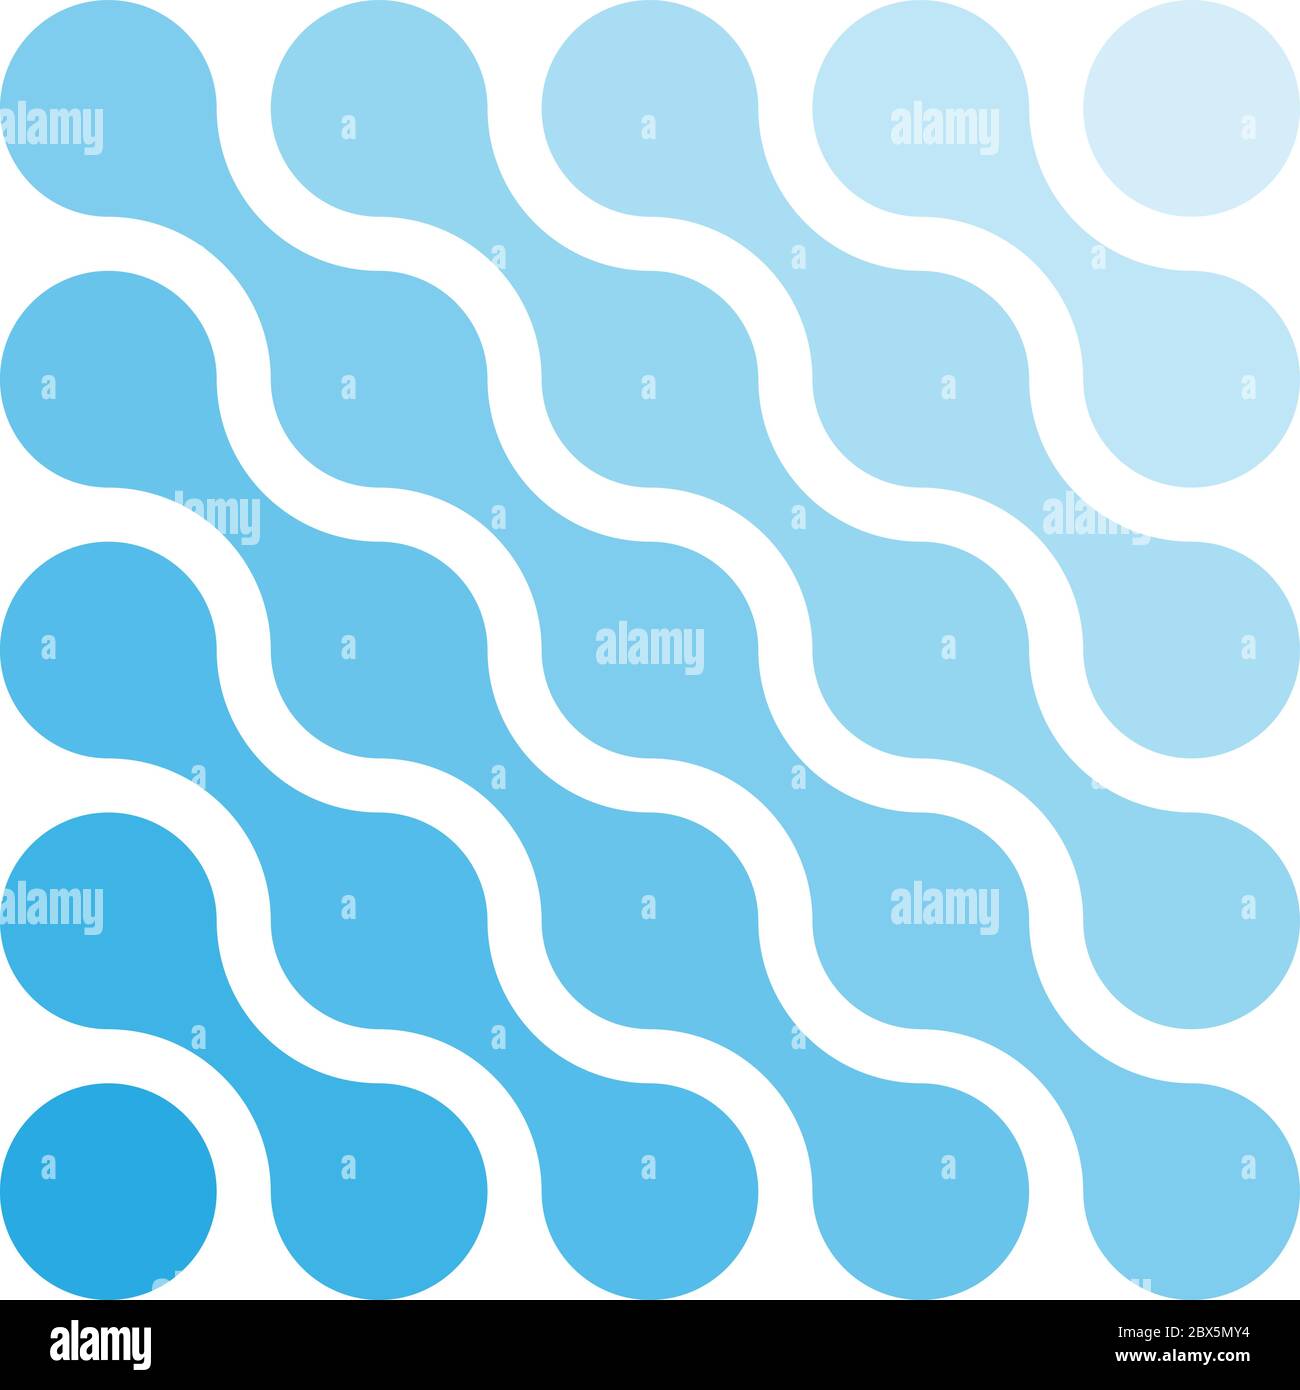 Points connectés en forme de losange et tons de bleu. Concept de thème de l'eau. Elément de conception abstrait. Illustration vectorielle. Illustration de Vecteur